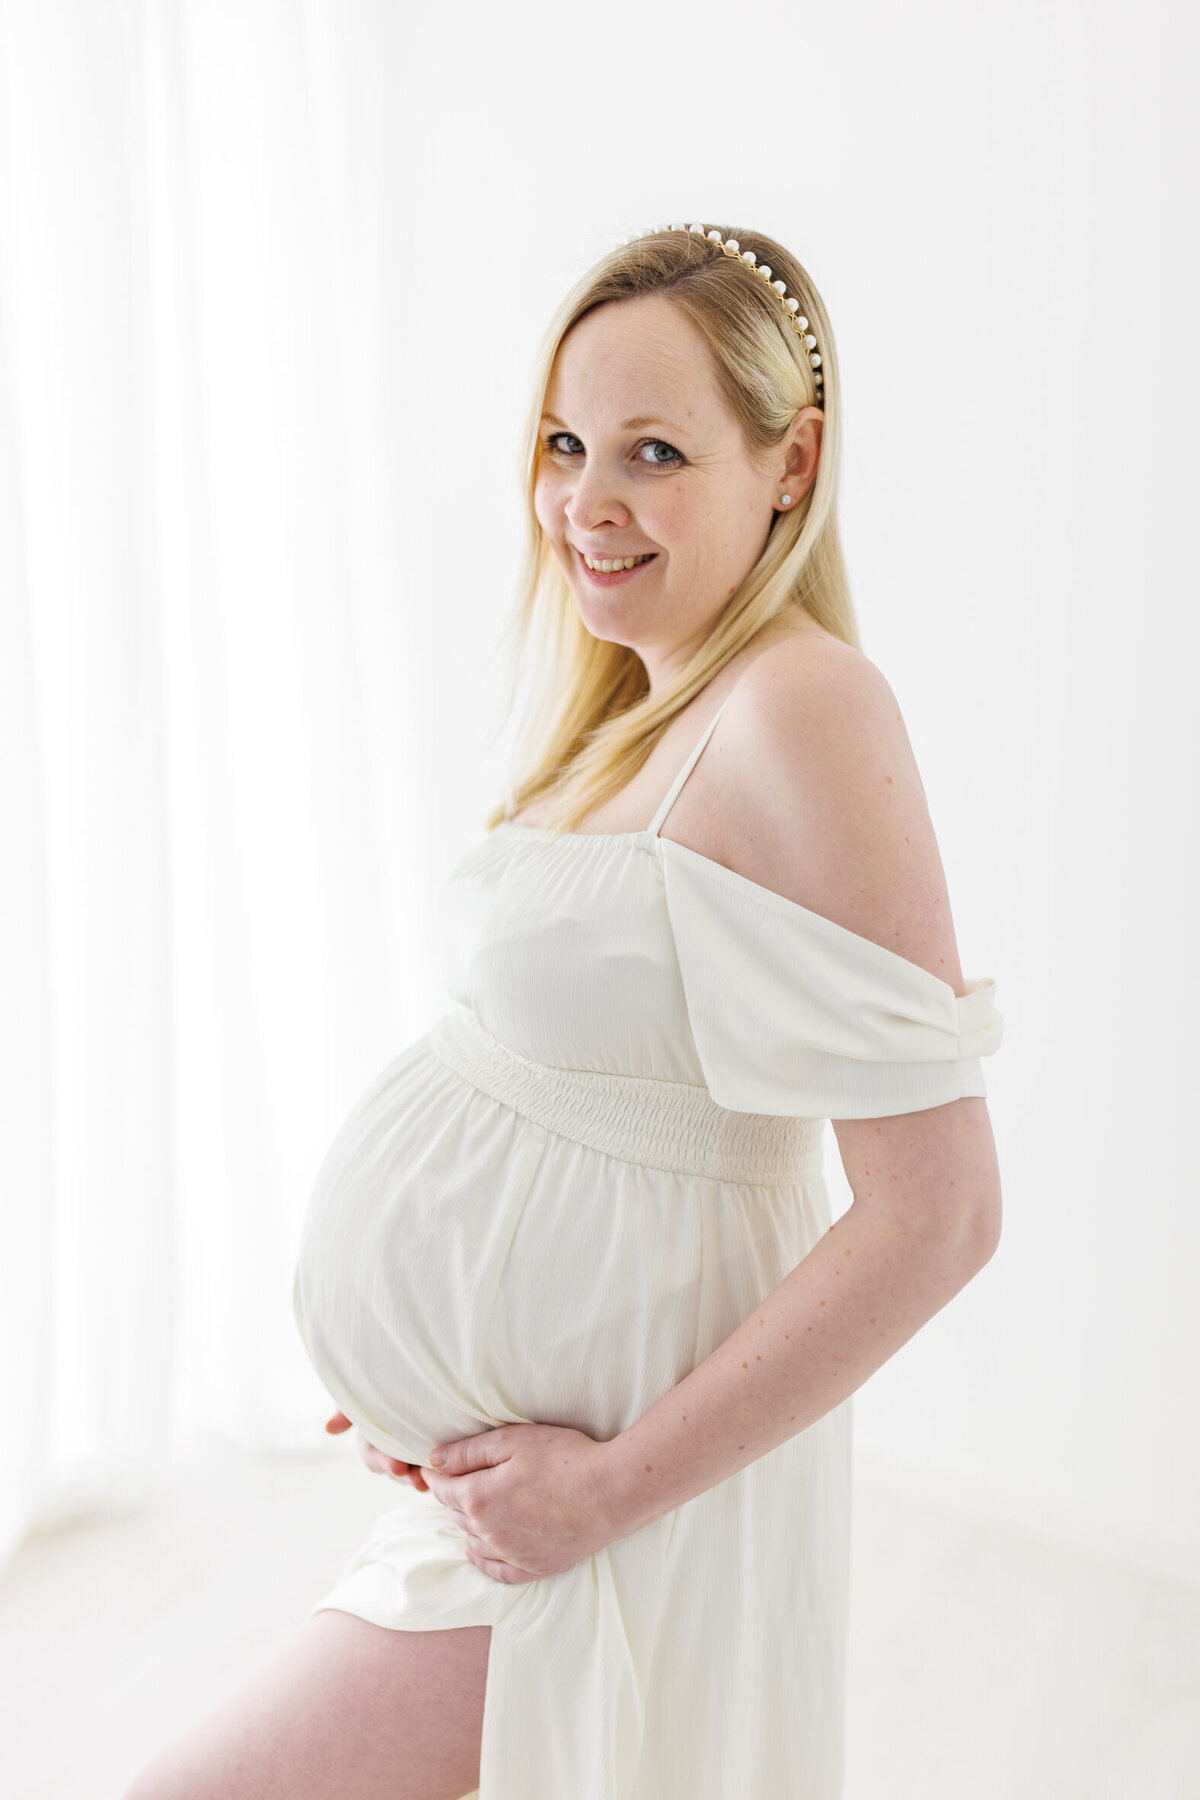 En gravid kvinne i hvit kjole holder rundt magen sin og smiler mot kamera. Hvite gardiner i bakgrunnen.